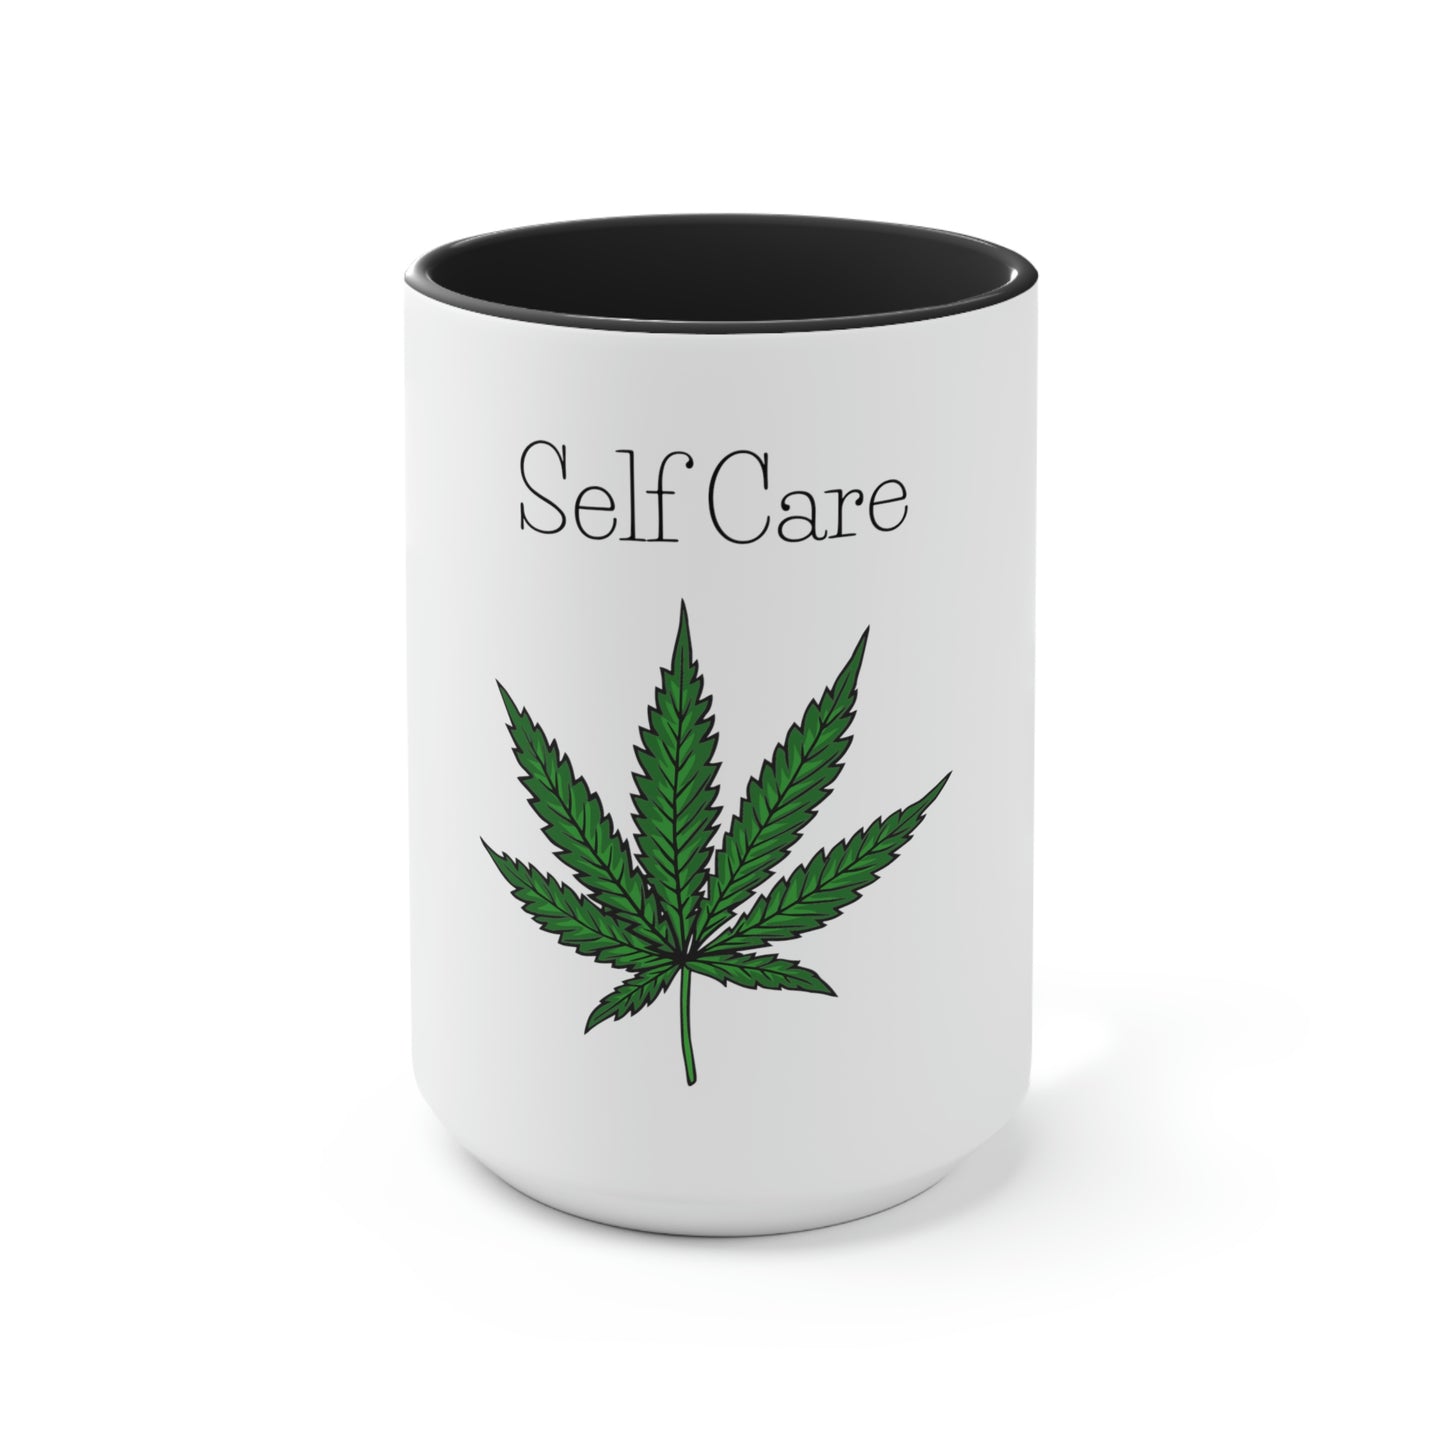 Self Care Pot Leaf Mug.